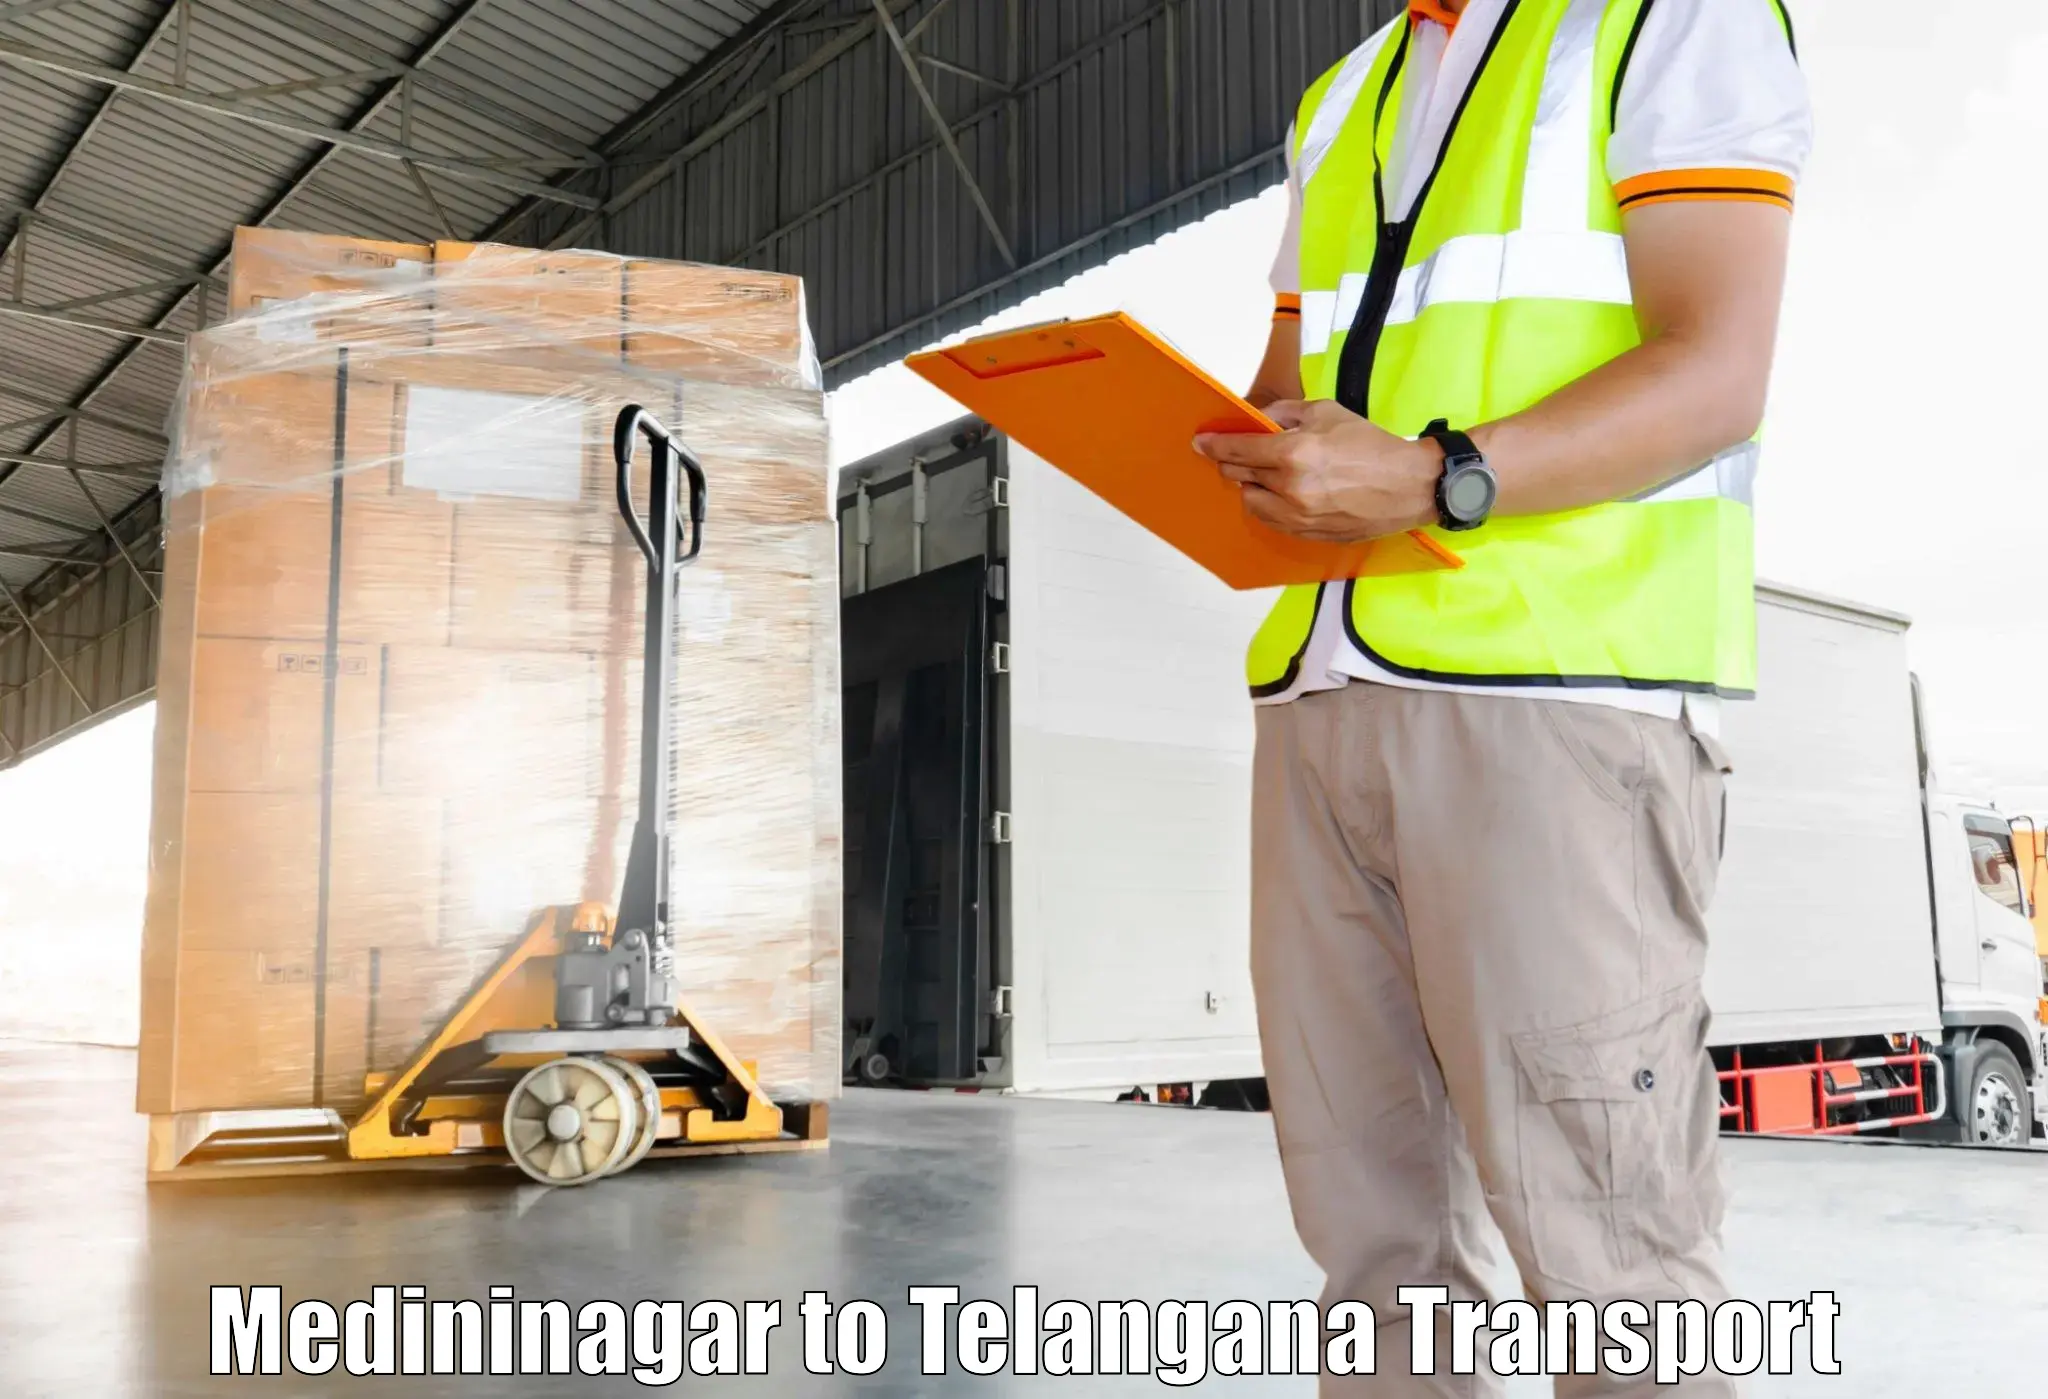 Interstate transport services Medininagar to Nirmal